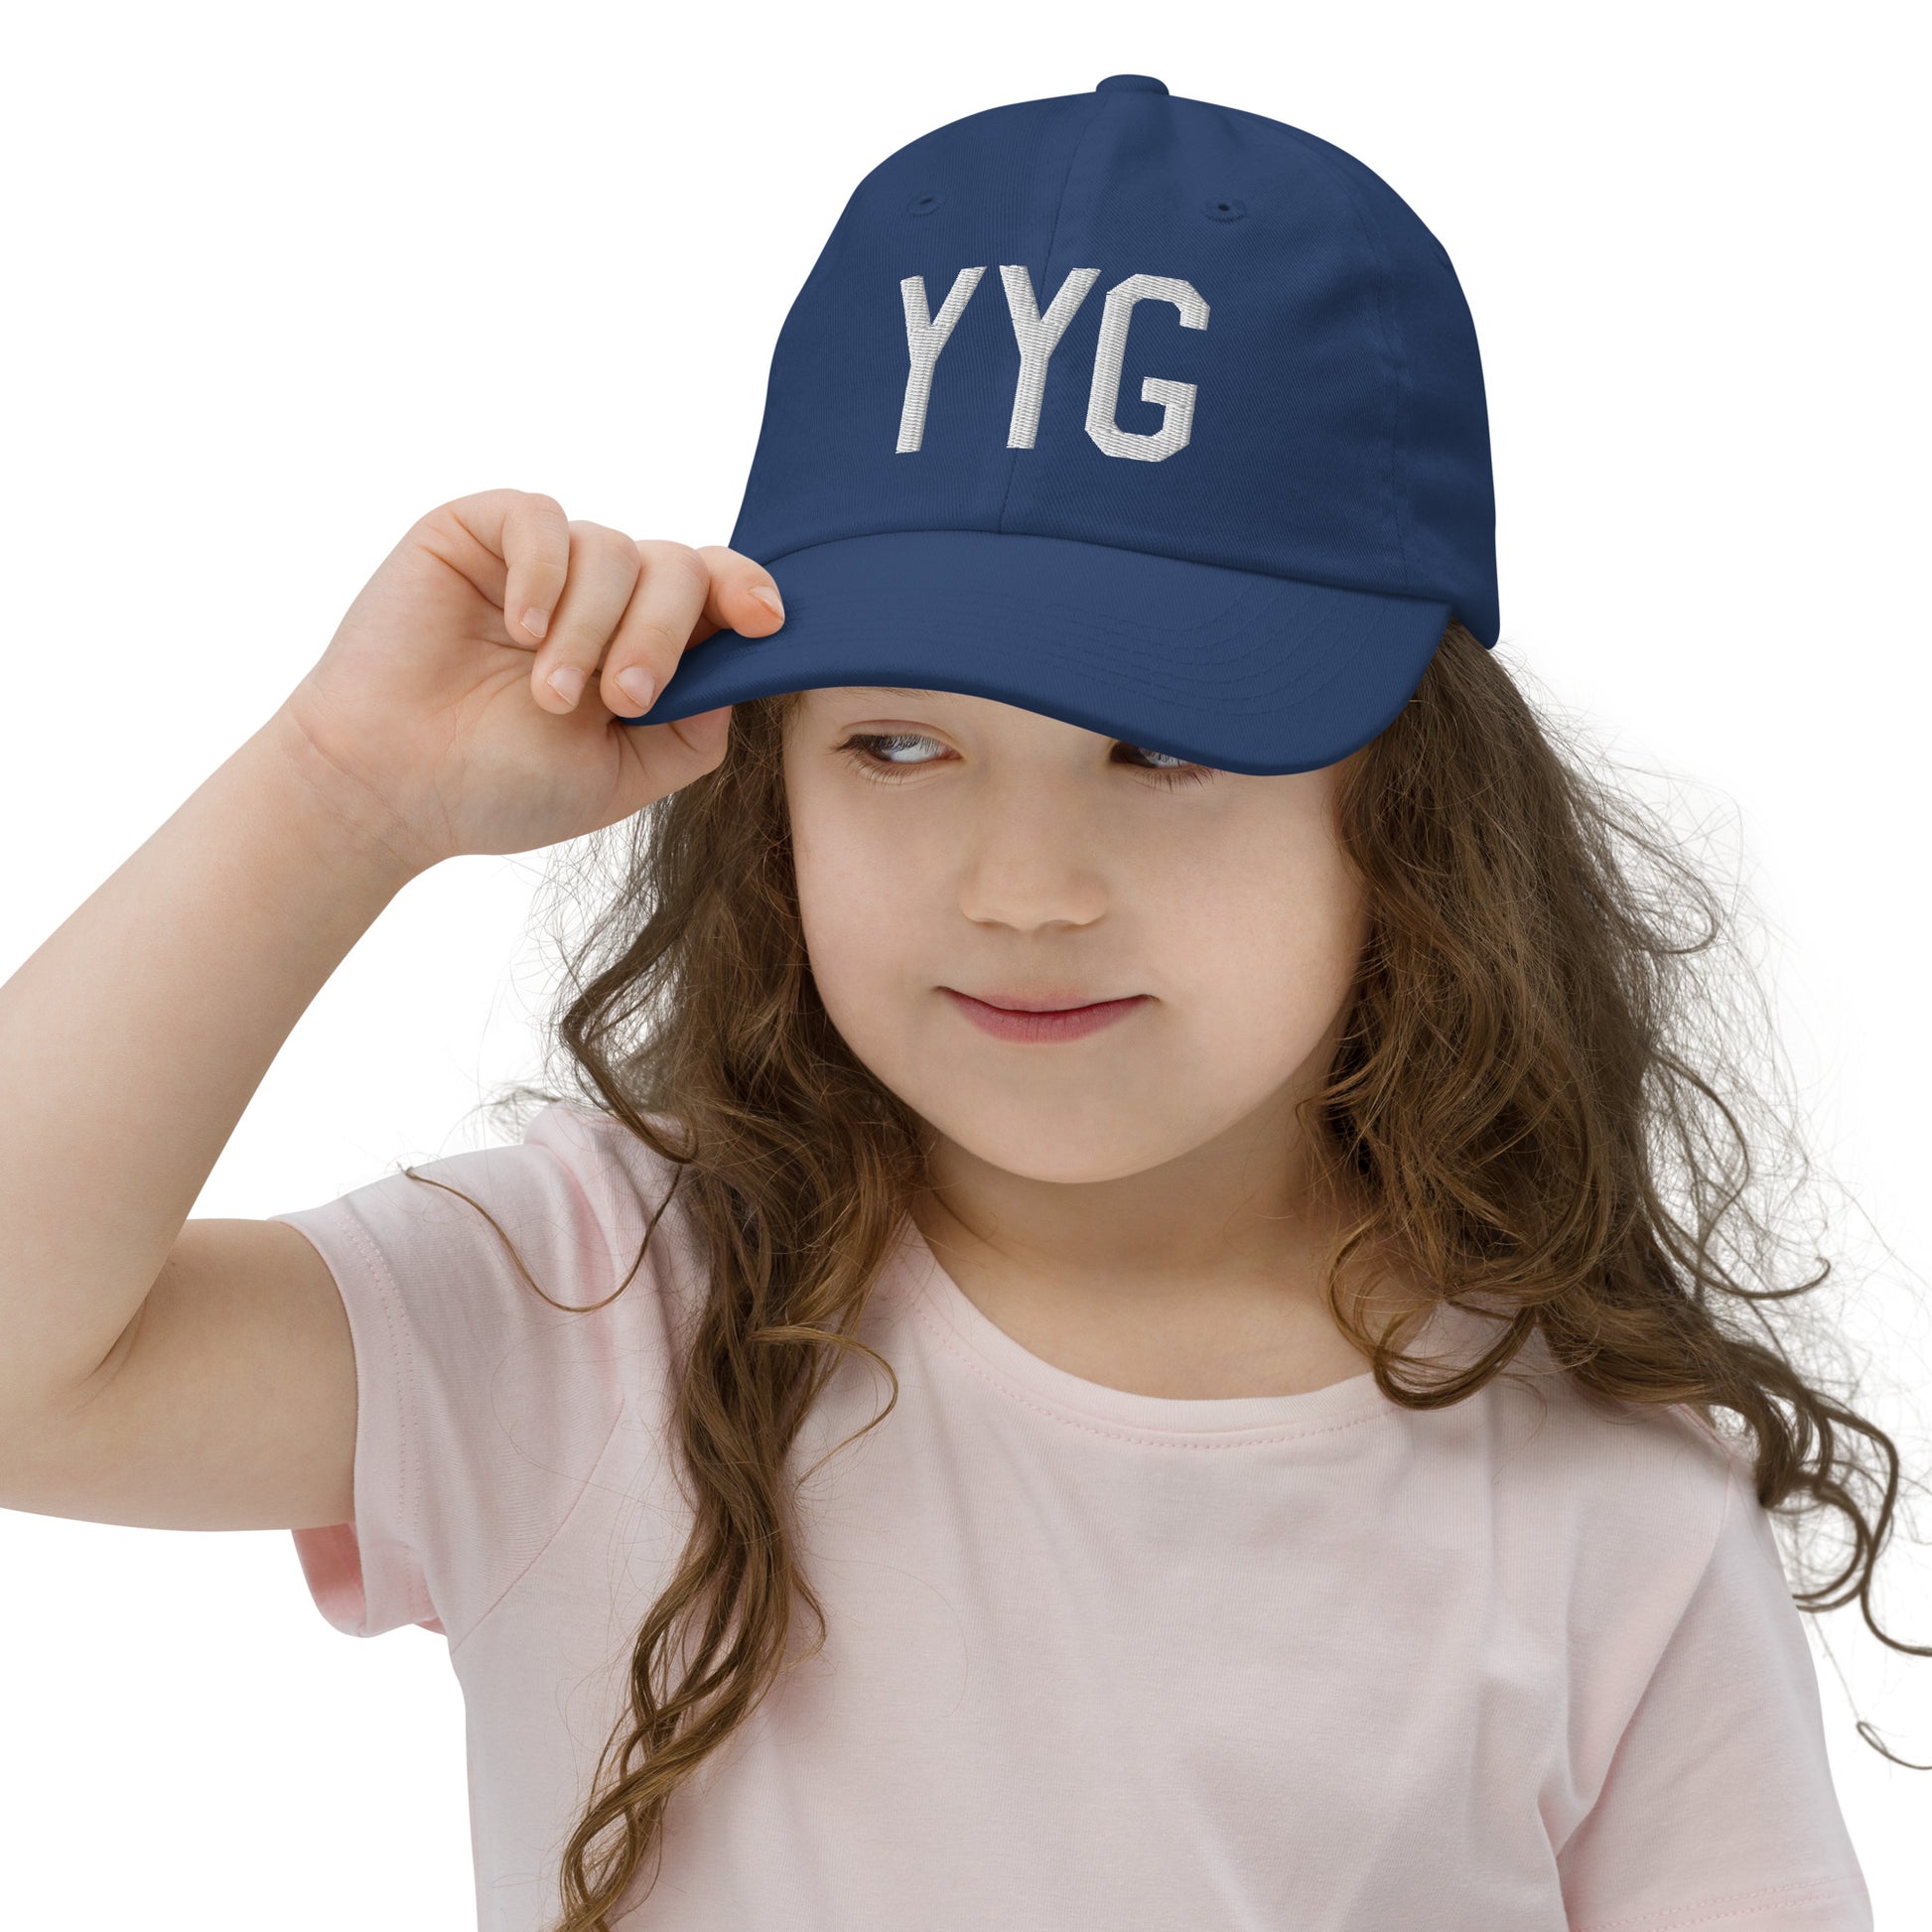 Airport Code Kid's Baseball Cap - White • YYG Charlottetown • YHM Designs - Image 05